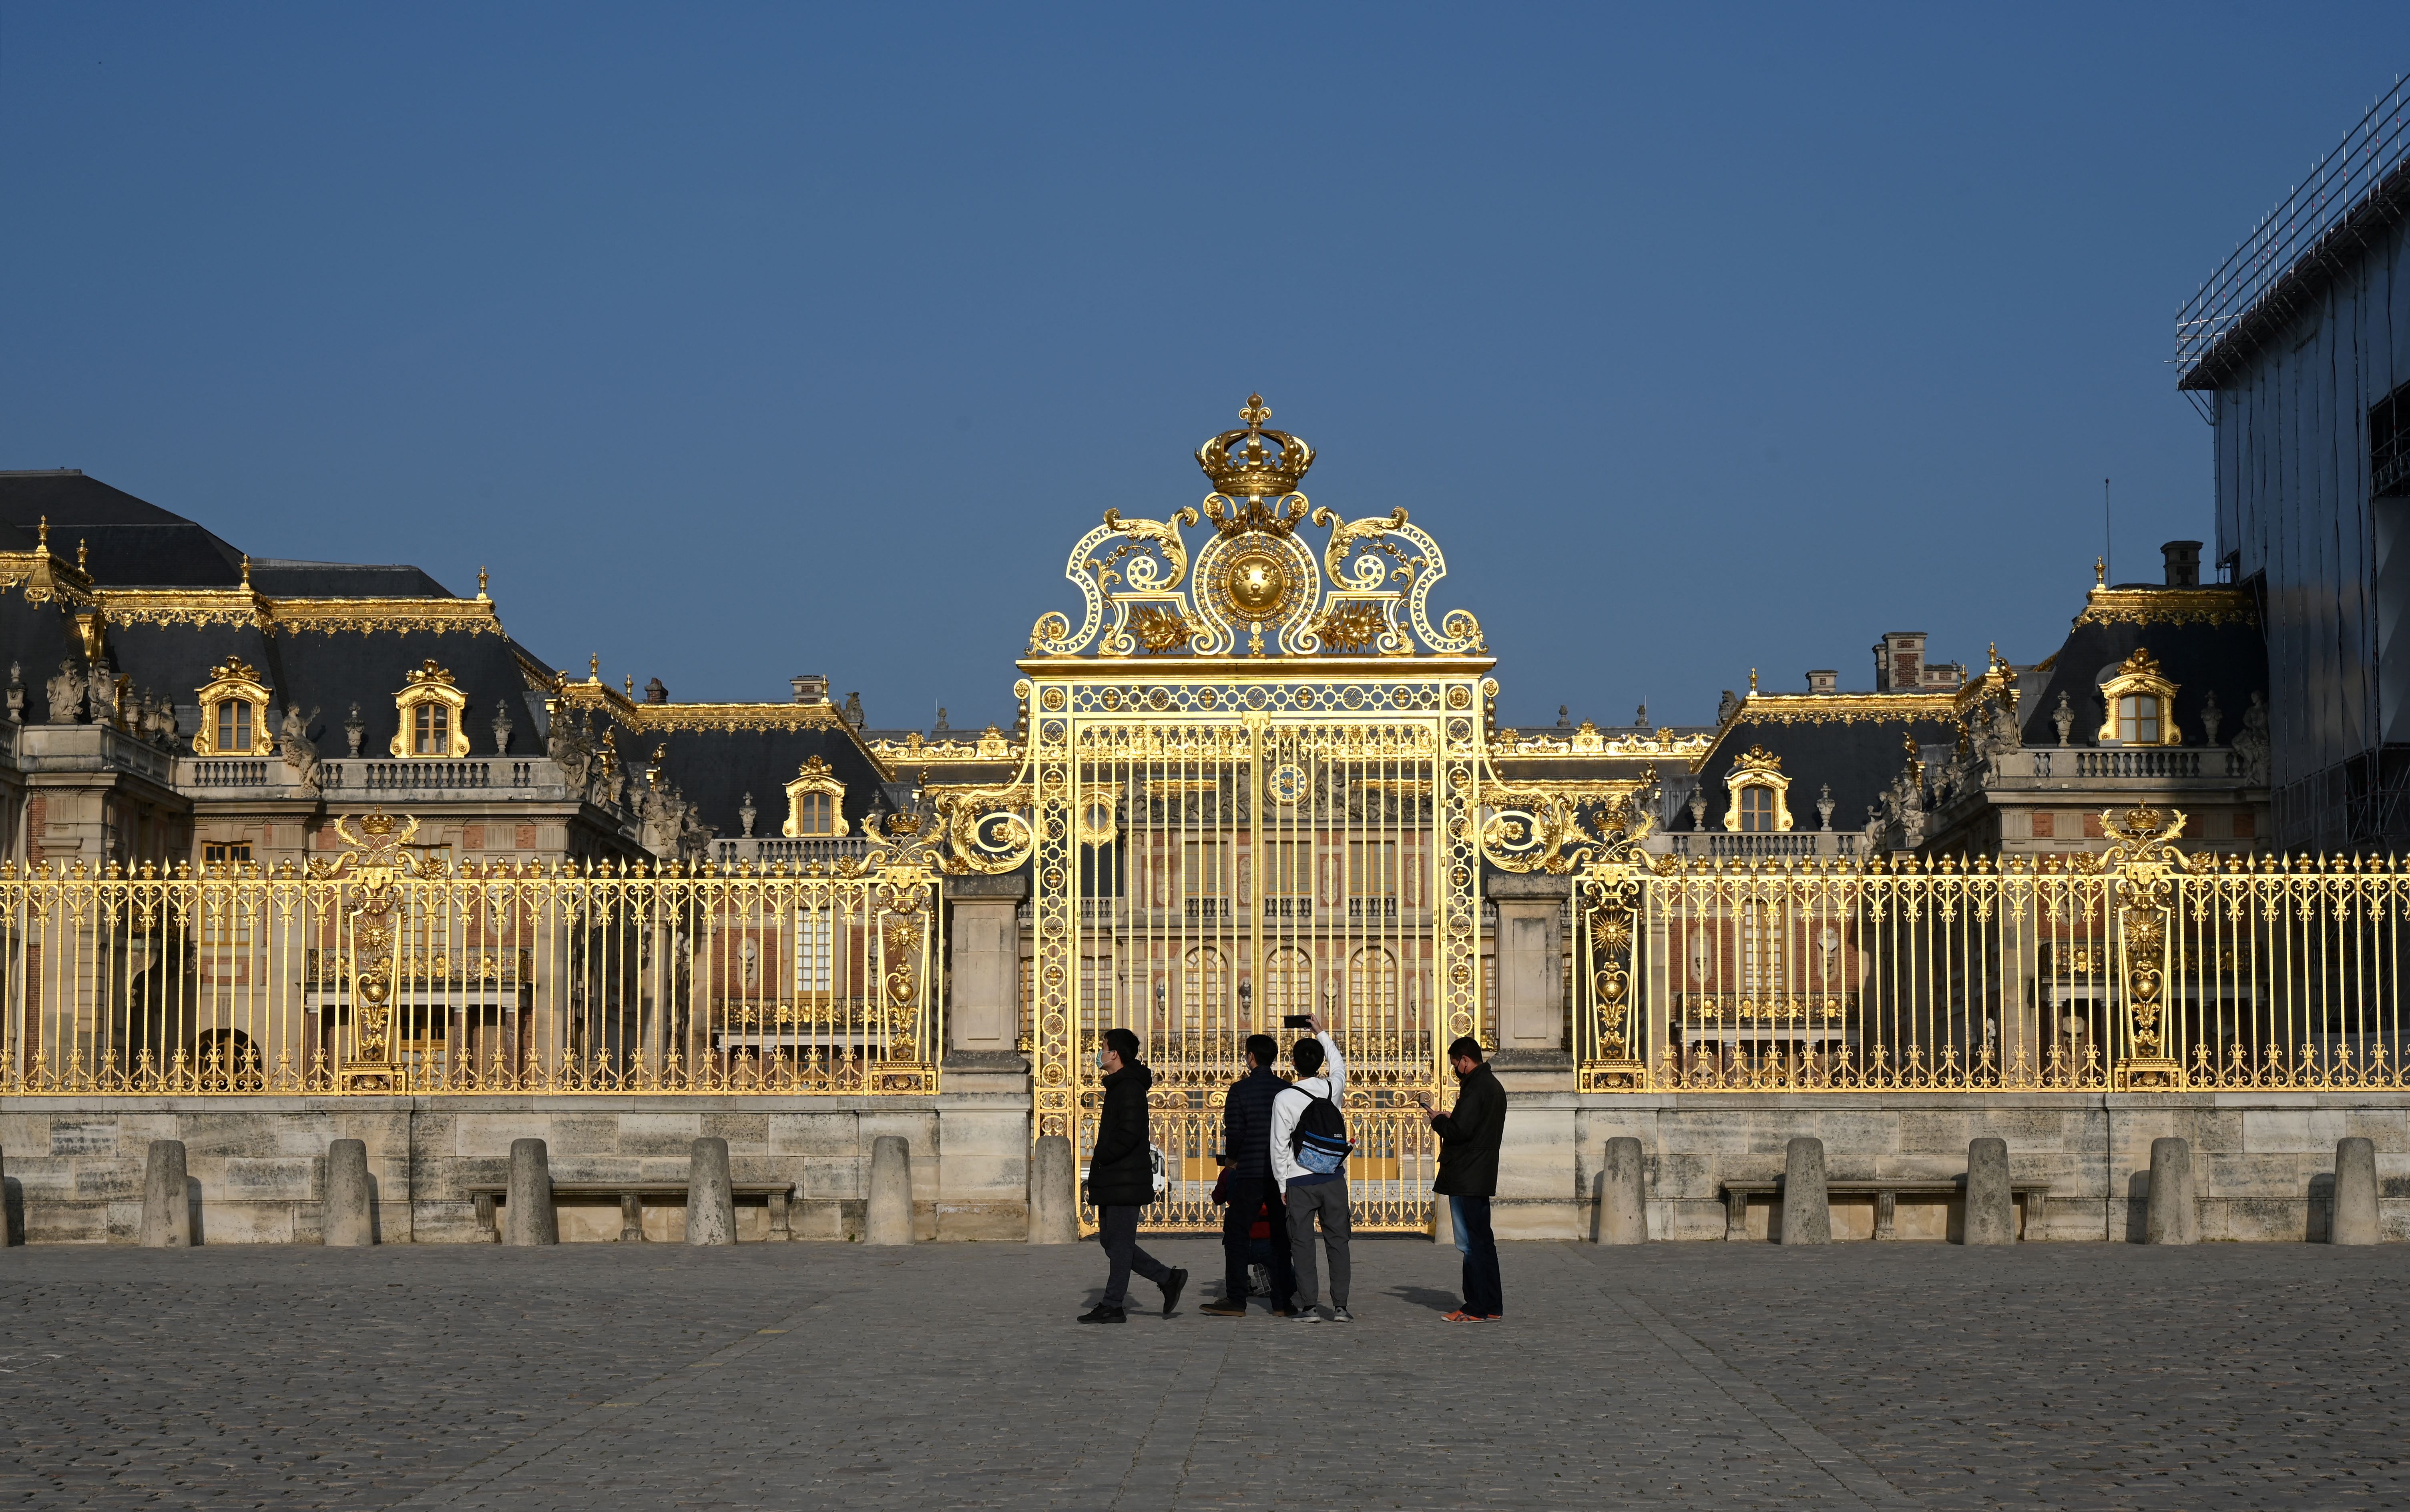 Quelque 500 invités sont attendus pour la fête du centenaire de l'entreprise prévue au château de Versailles. AFP/Emmanuel Dunand